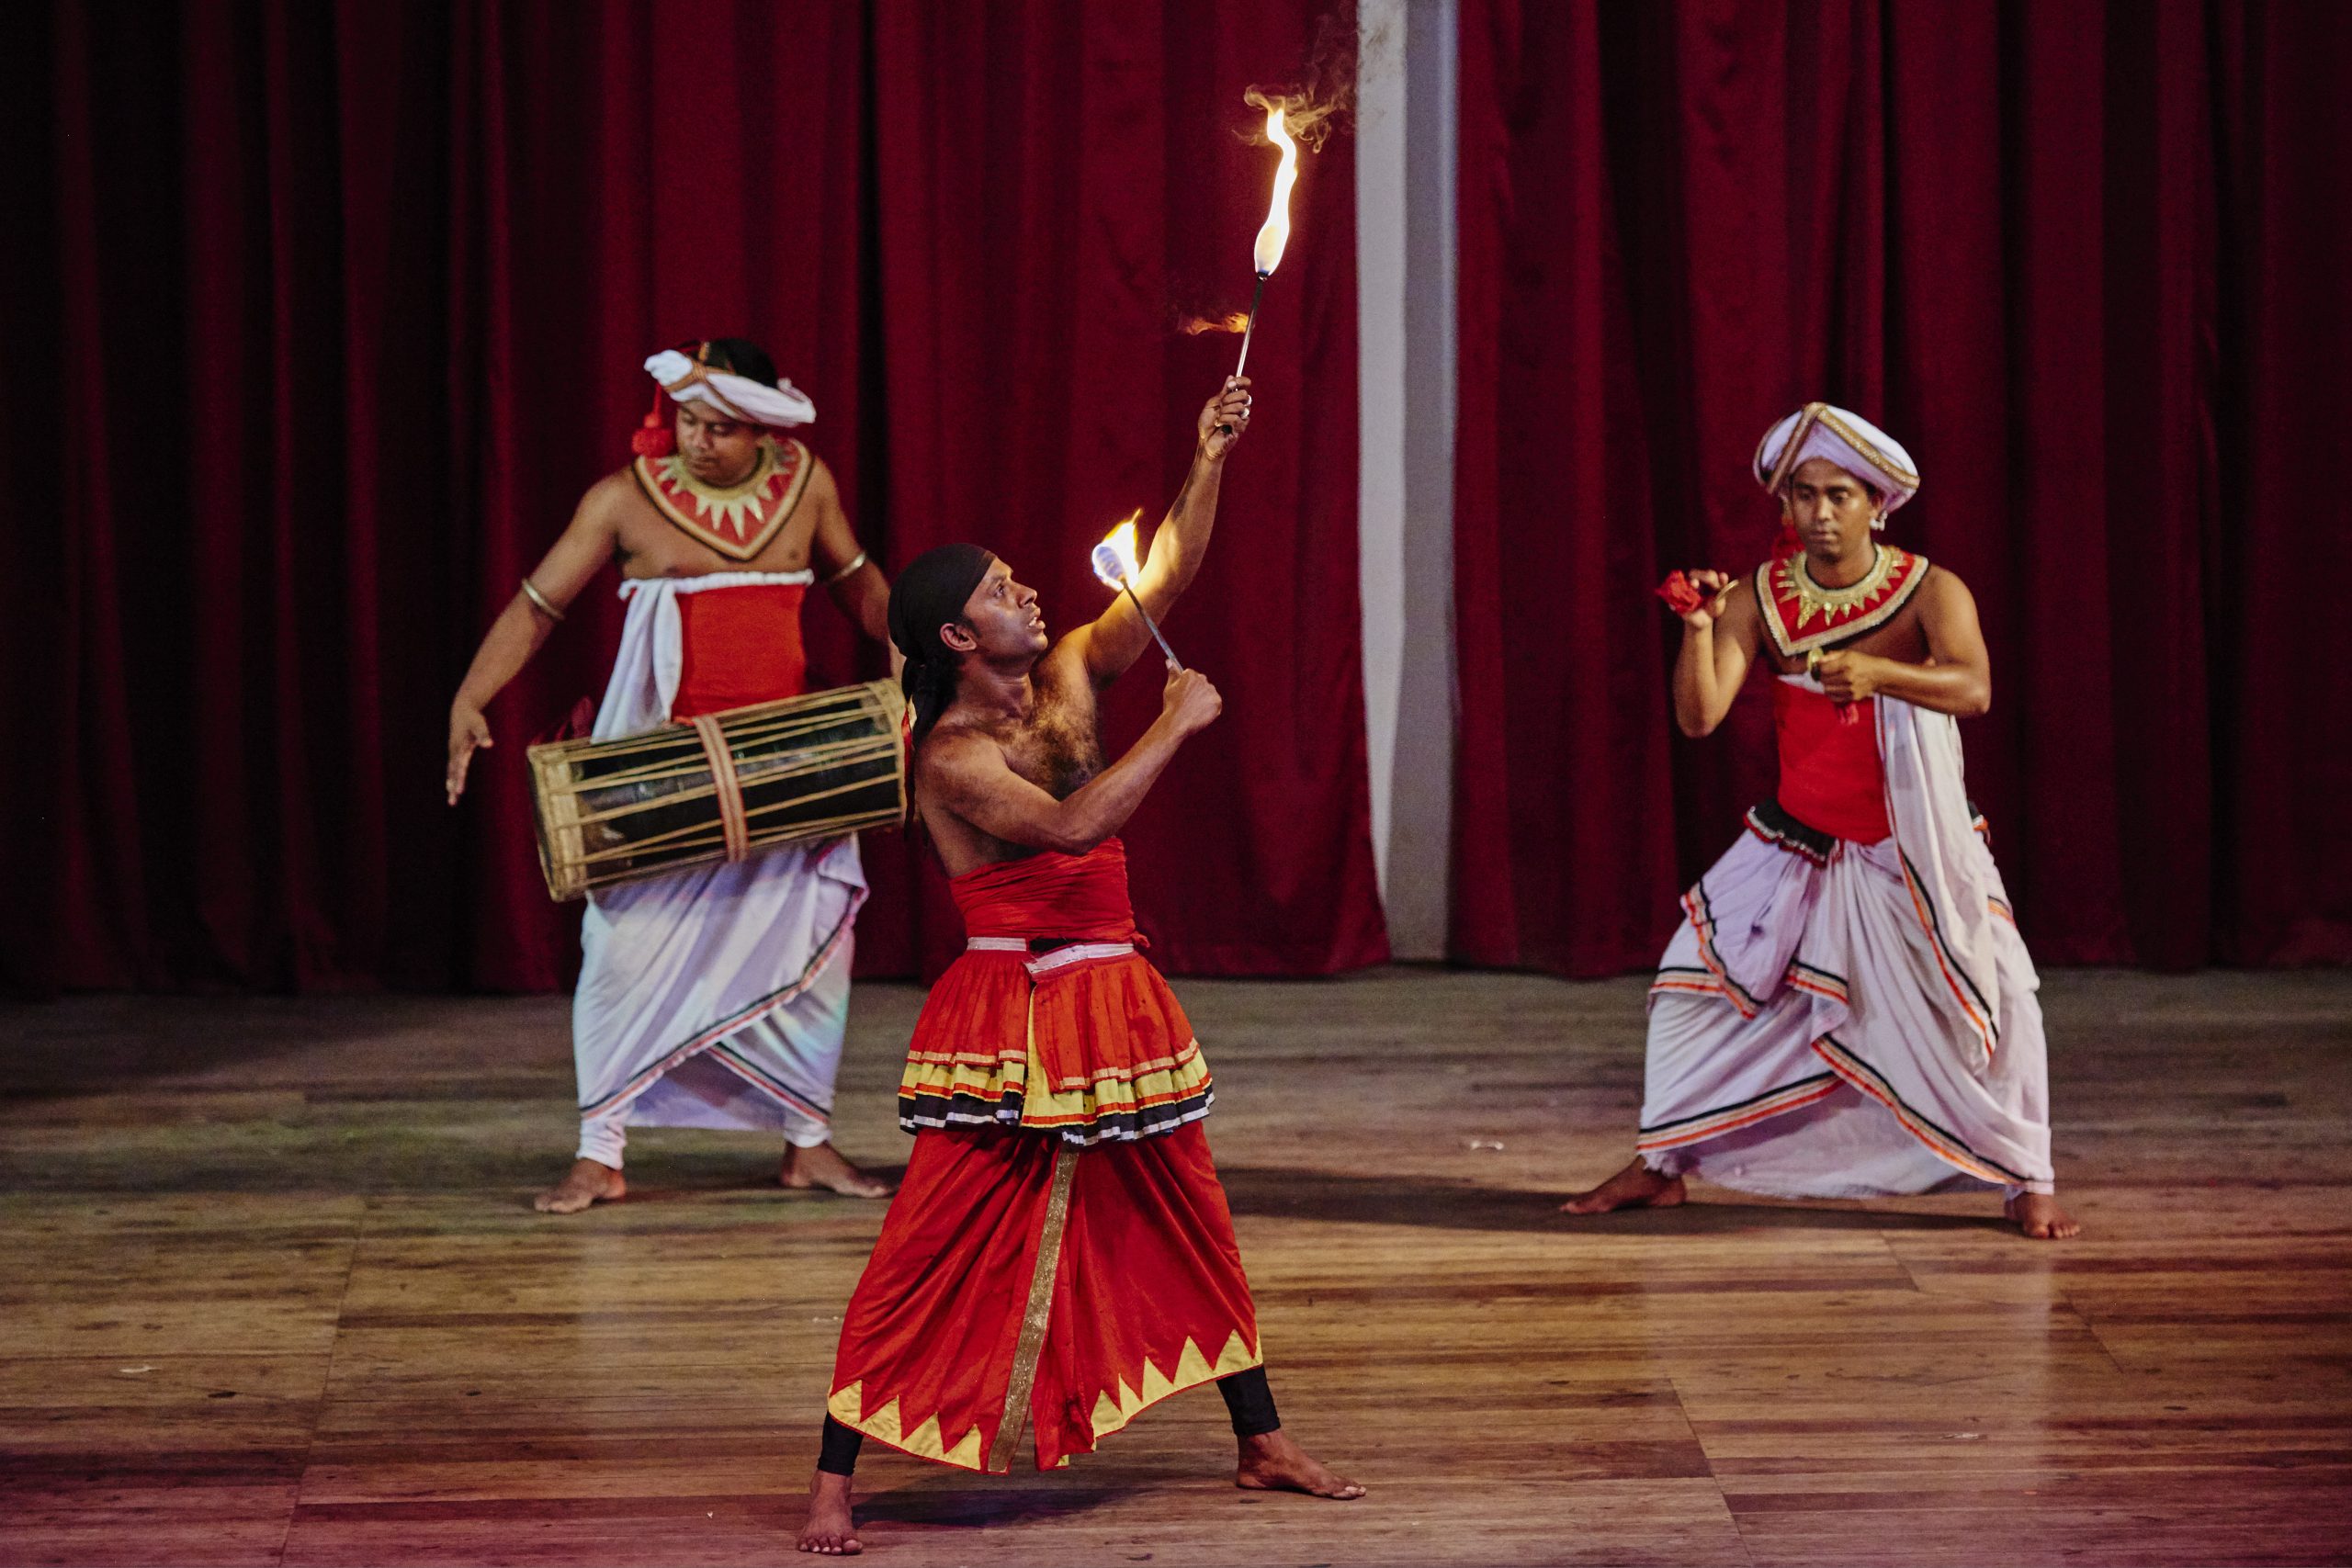 Sri Lanka, Kandy, Kandyan danse show